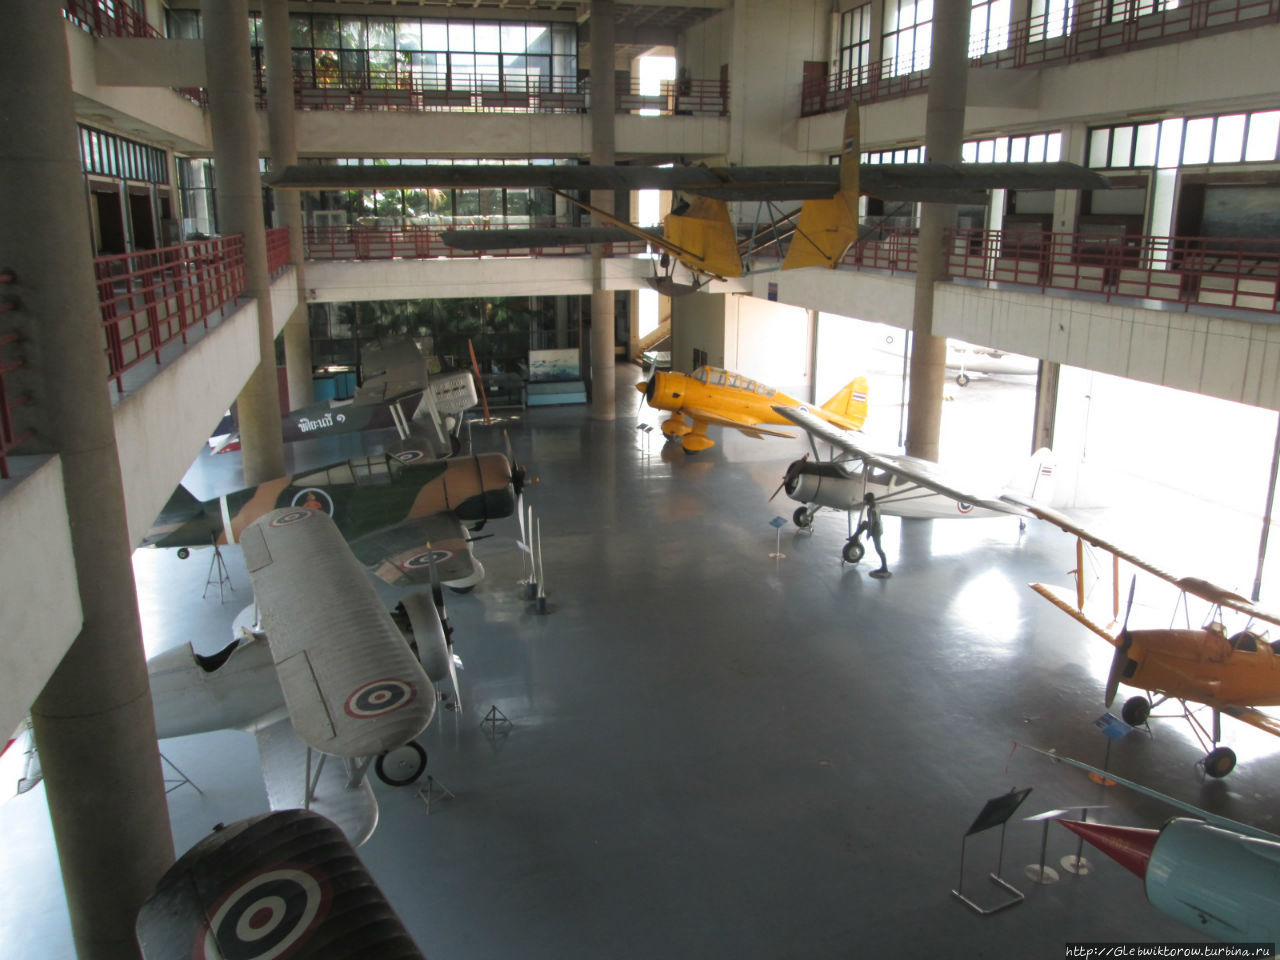 Павильон с самолетами — часть музей ВВС Таиланда Бангкок, Таиланд